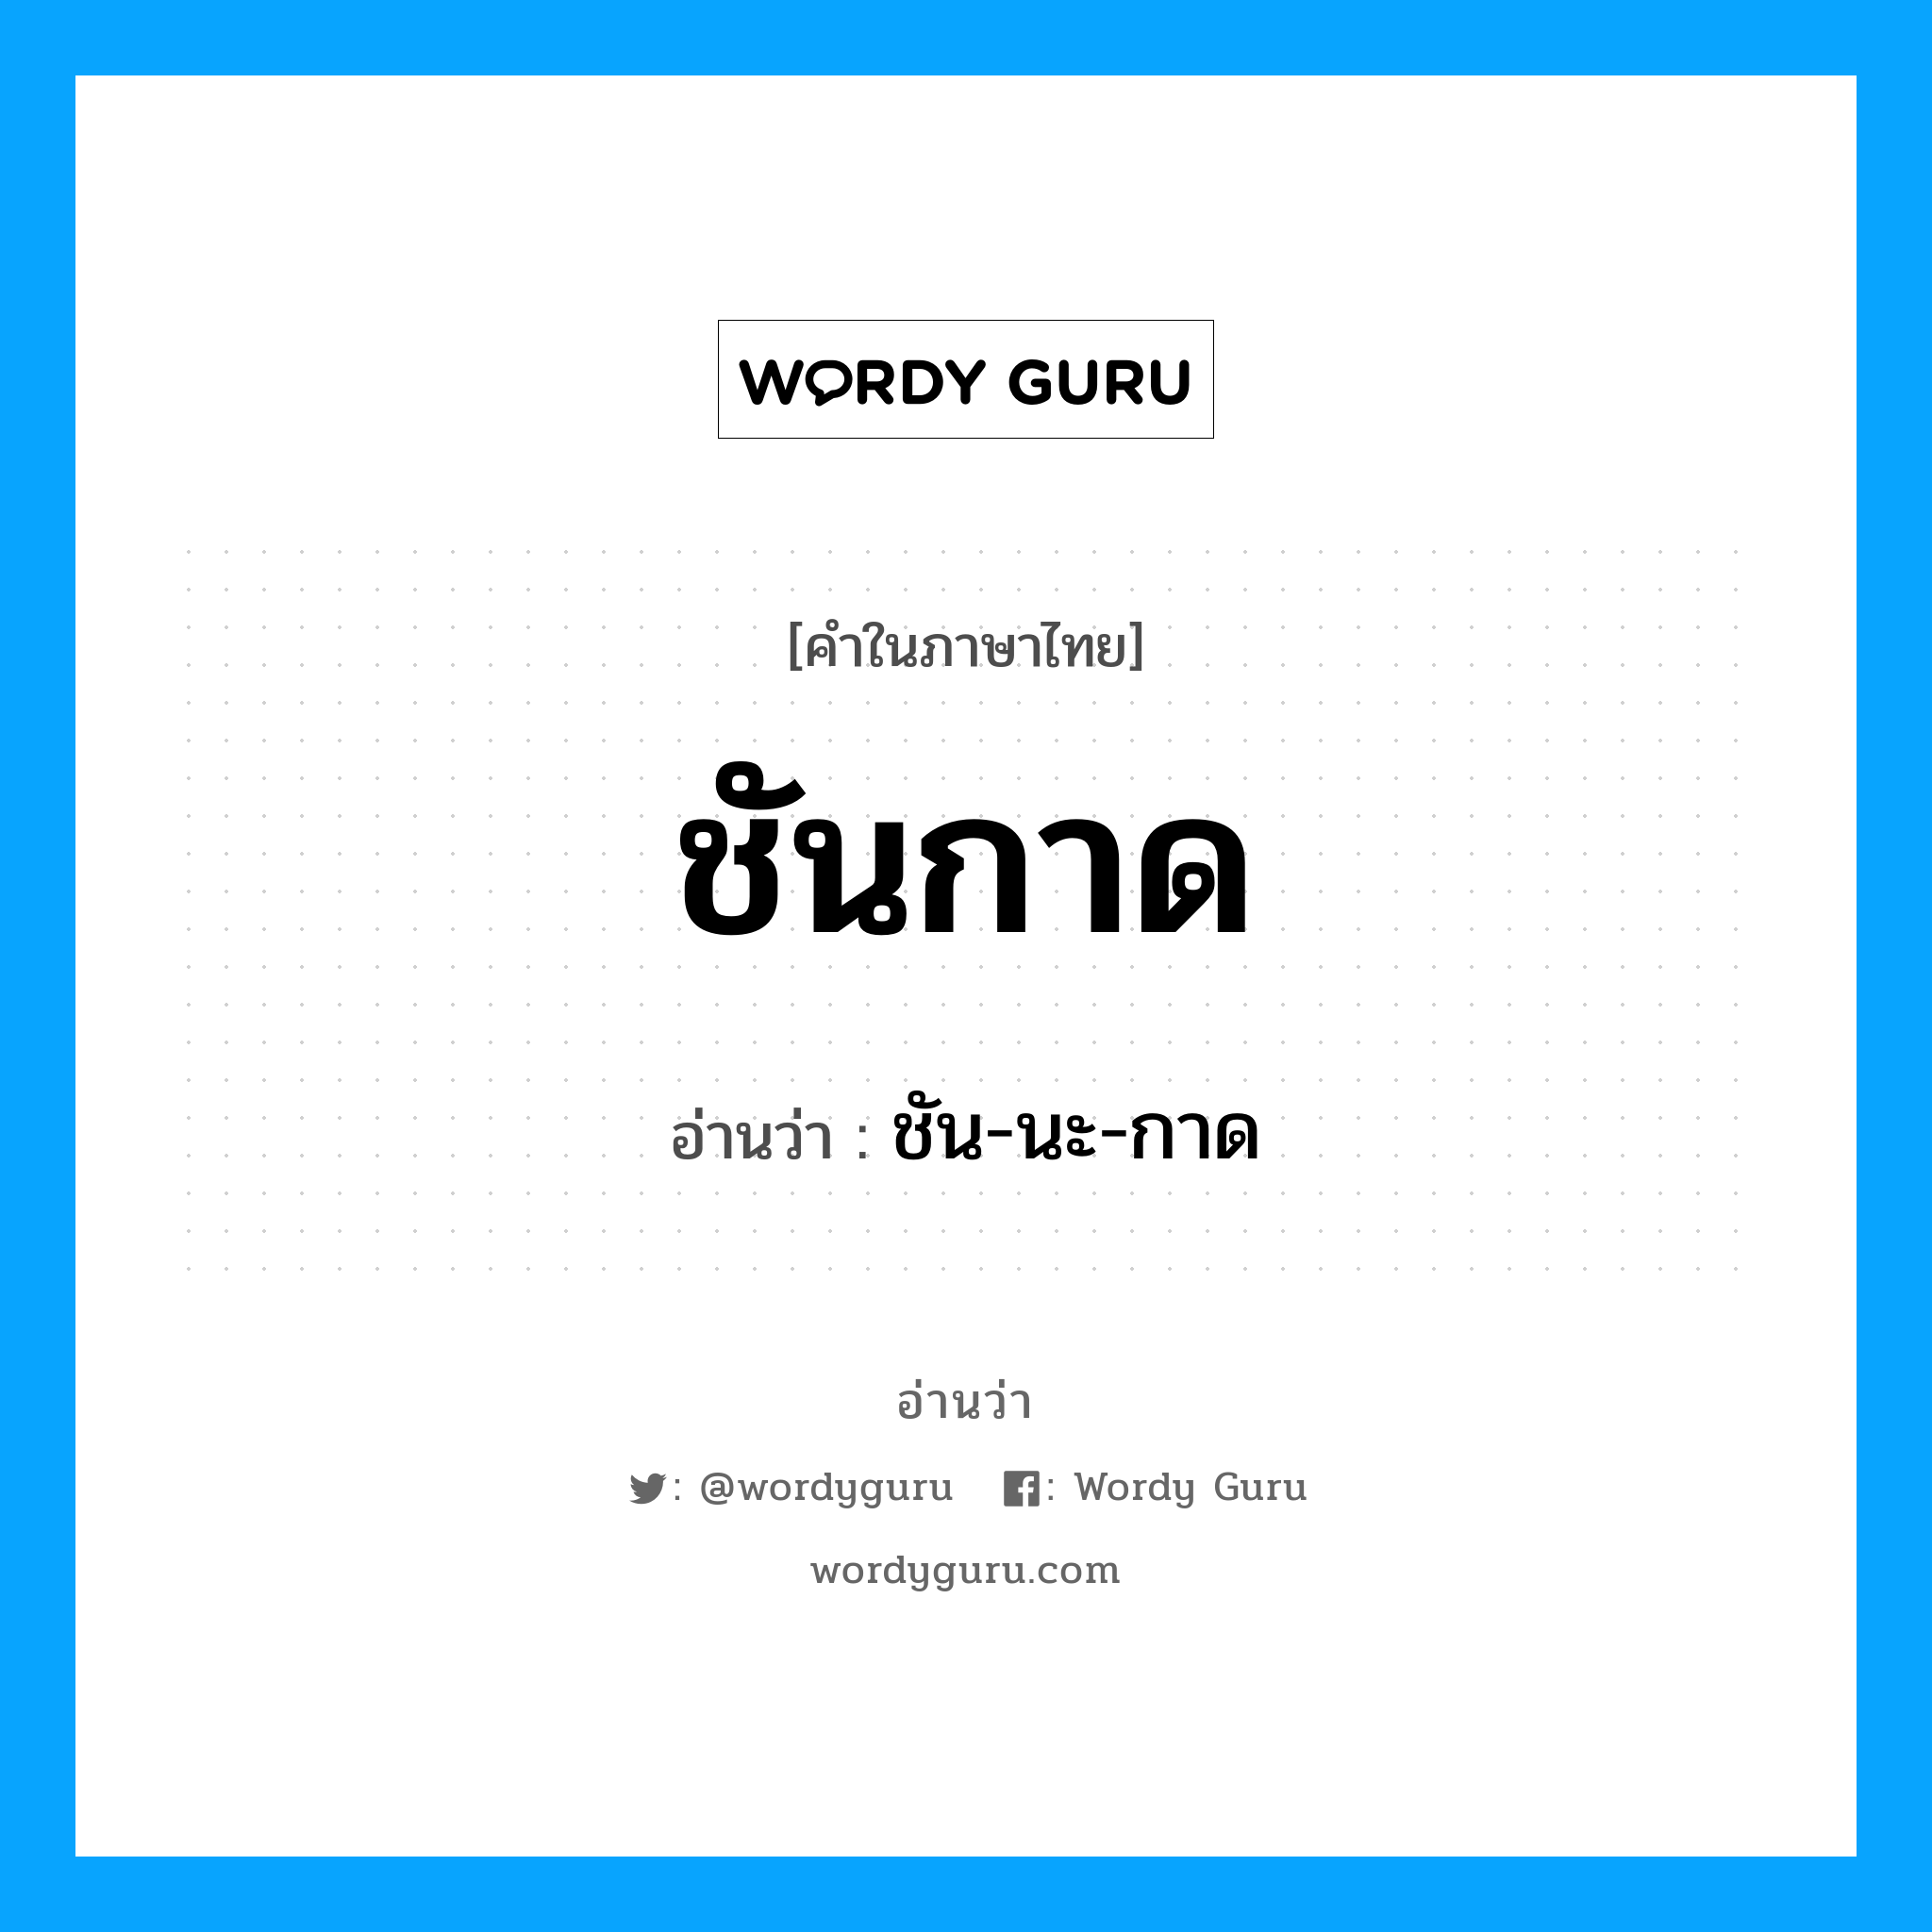 ชัน-นะ-กาด เป็นคำอ่านของคำไหน?, คำในภาษาไทย ชัน-นะ-กาด อ่านว่า ชันกาด